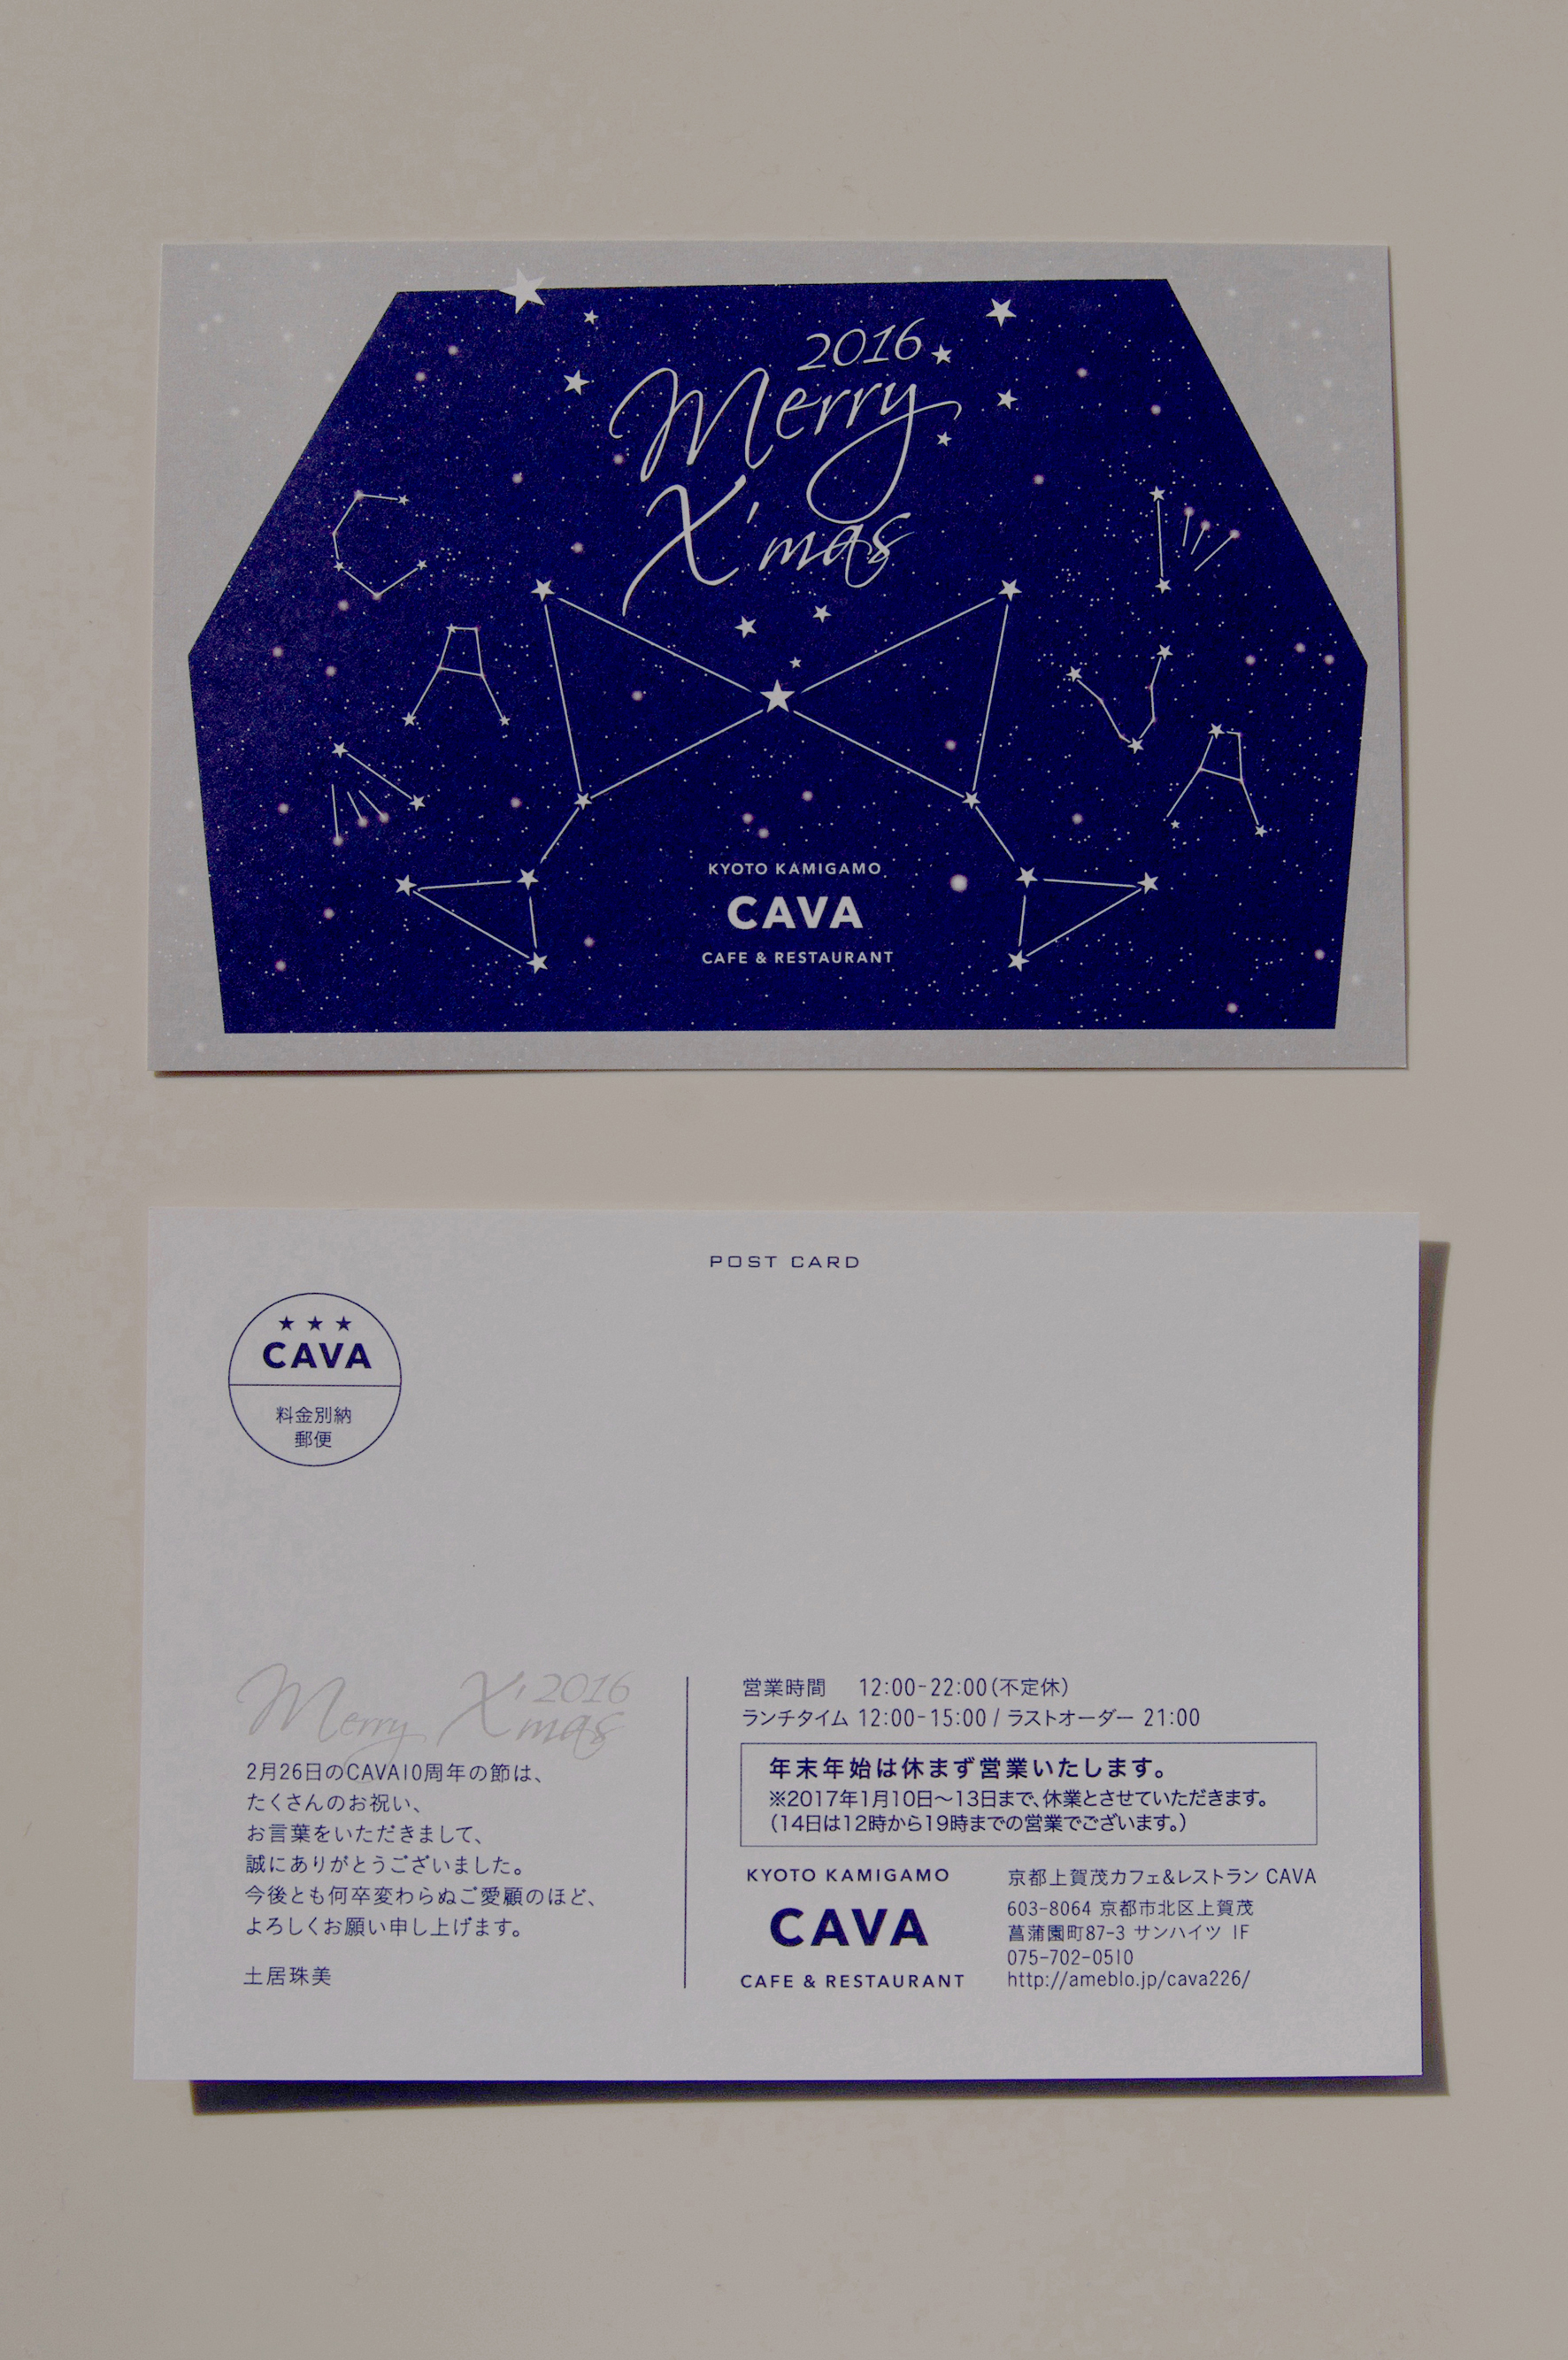 CAVA X’mas Card 2016